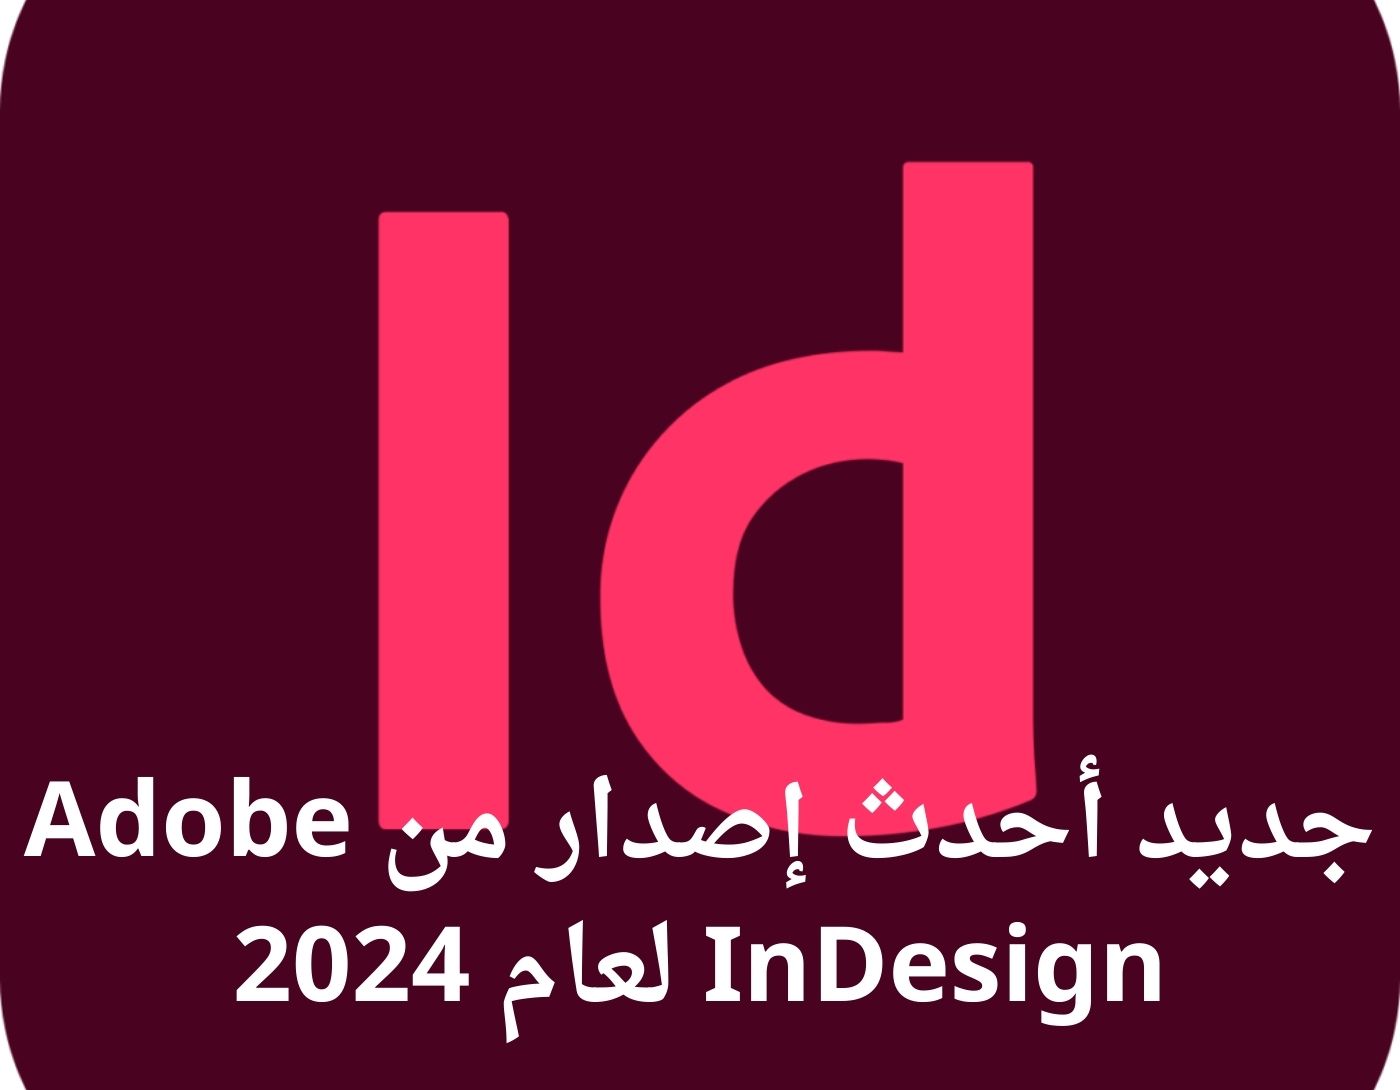 صورة واجهة برنامج Adobe InDesign لعام 2024